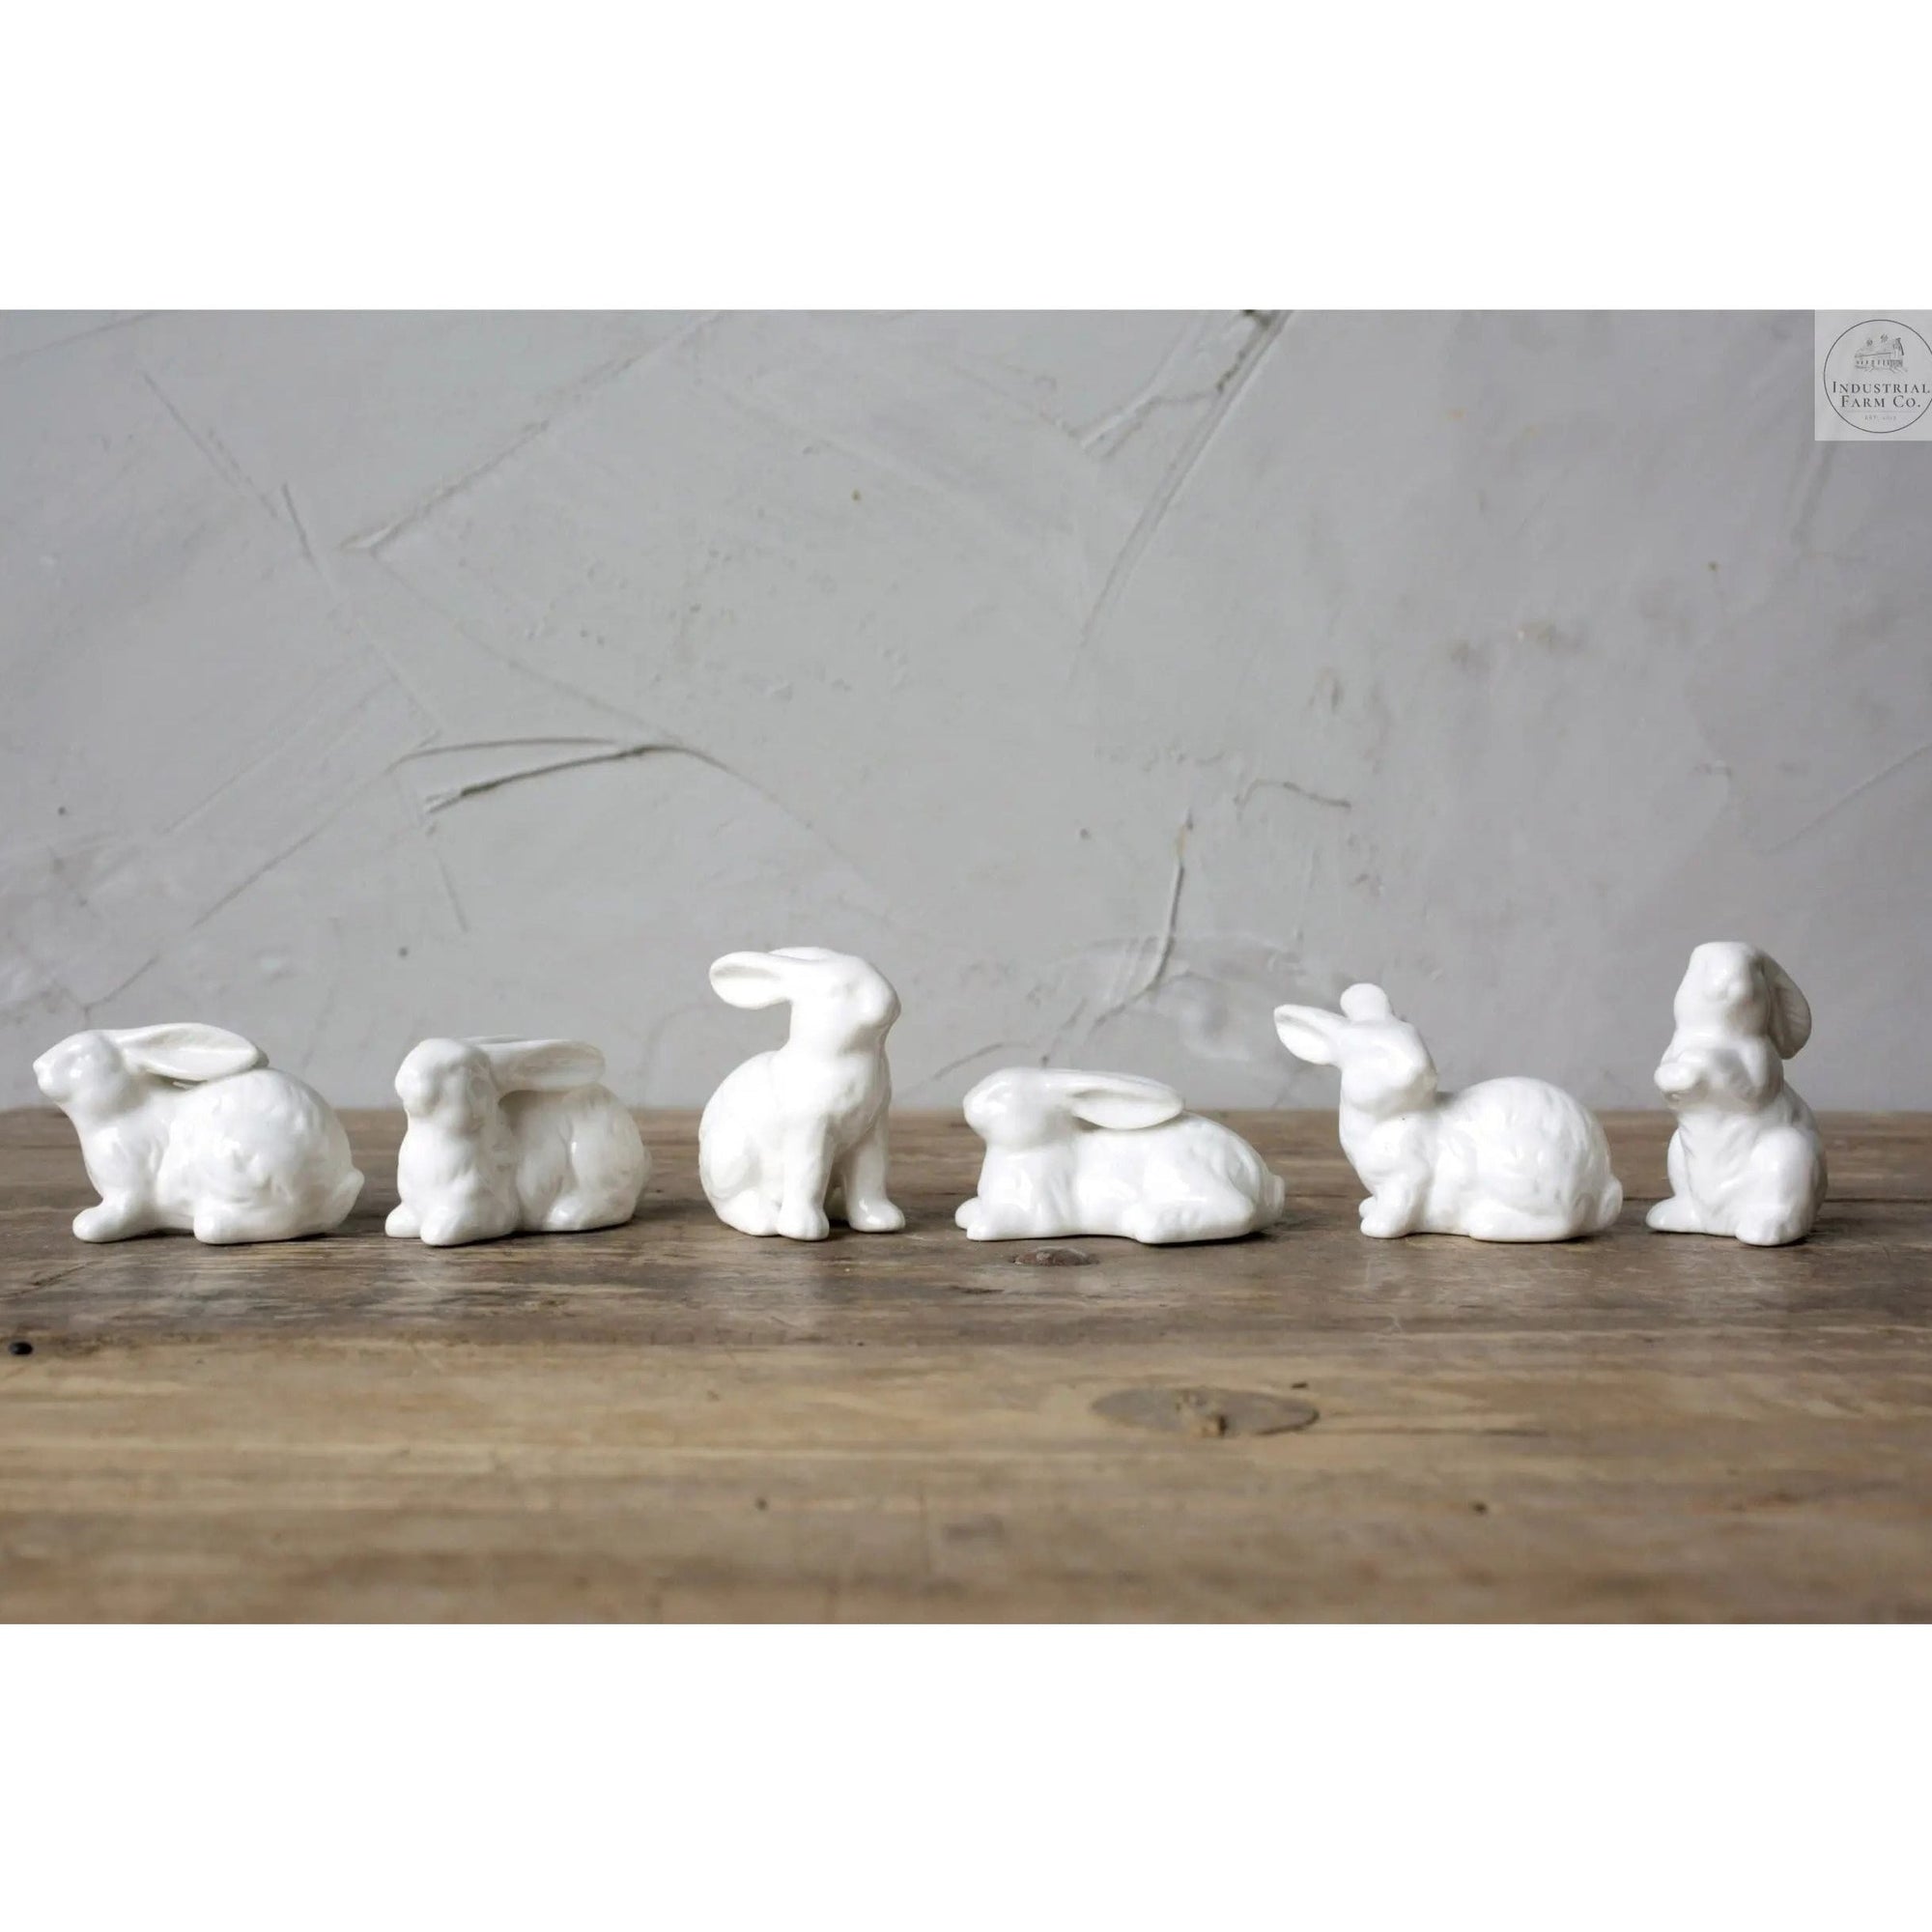 Easter Decor Ceramic Bunnies     | Industrial Farm Co